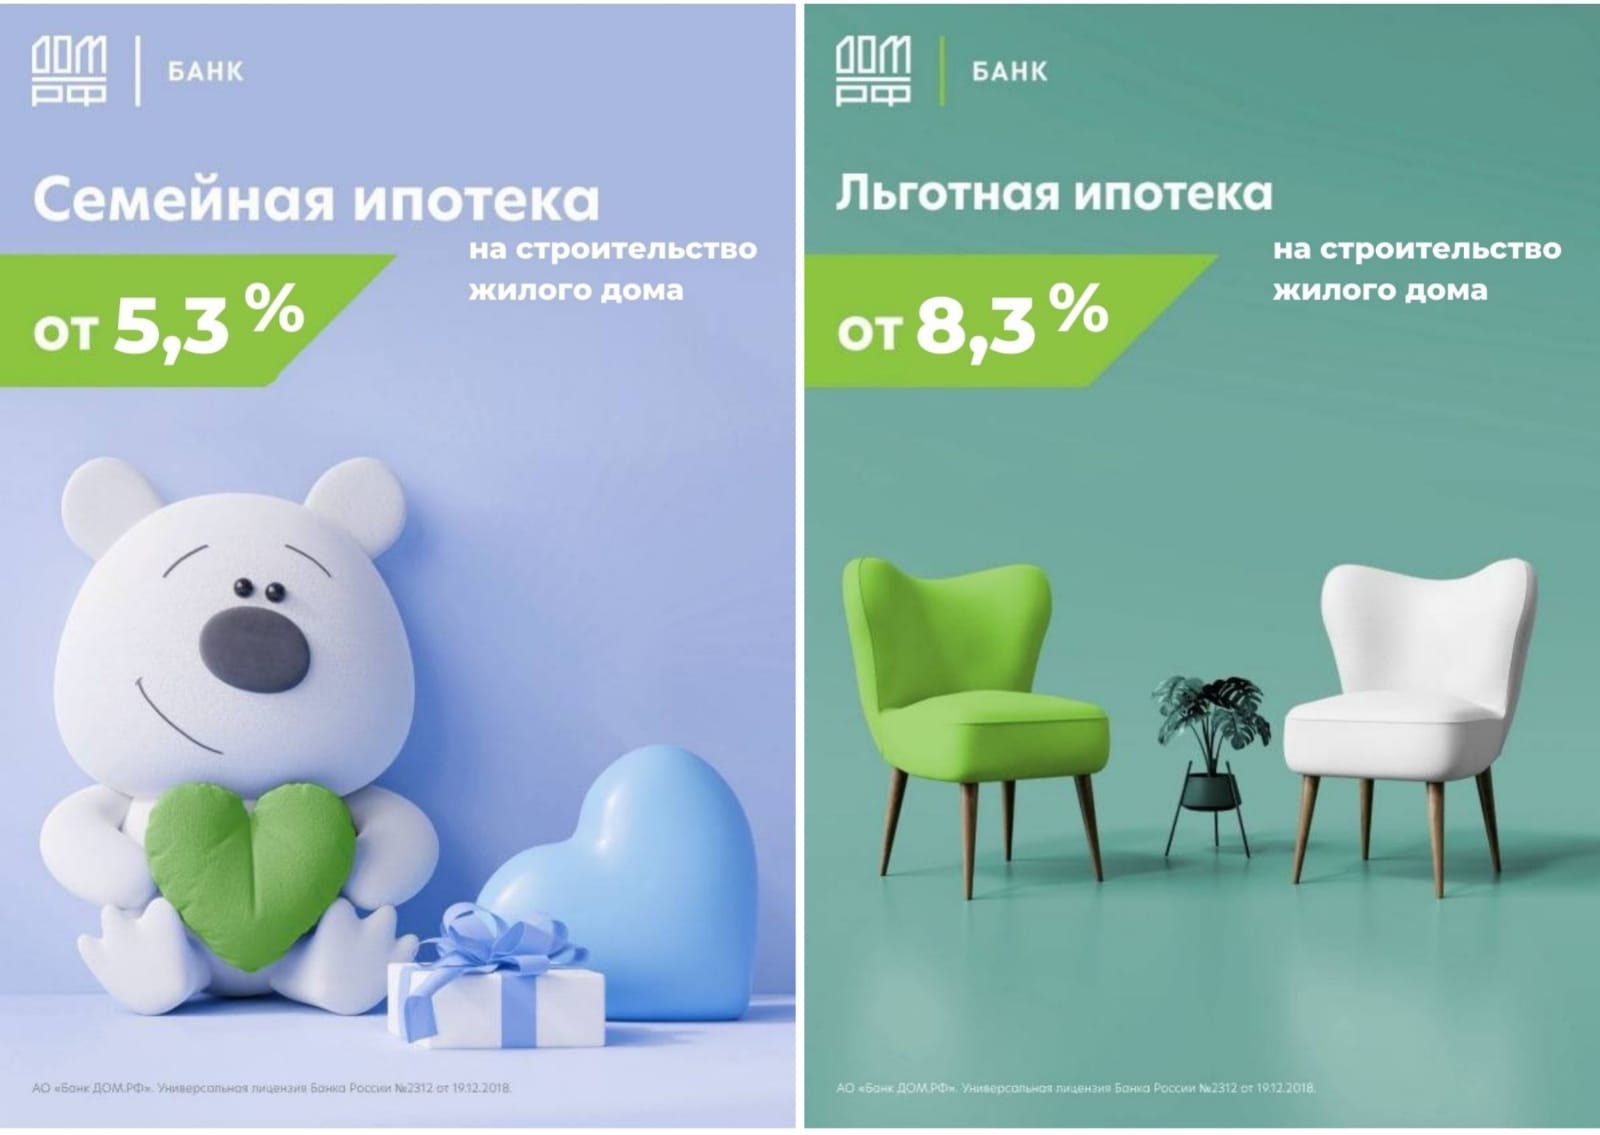 Льготная ипотека от 5,3% на строительство дома от банка ДОМ.РФ